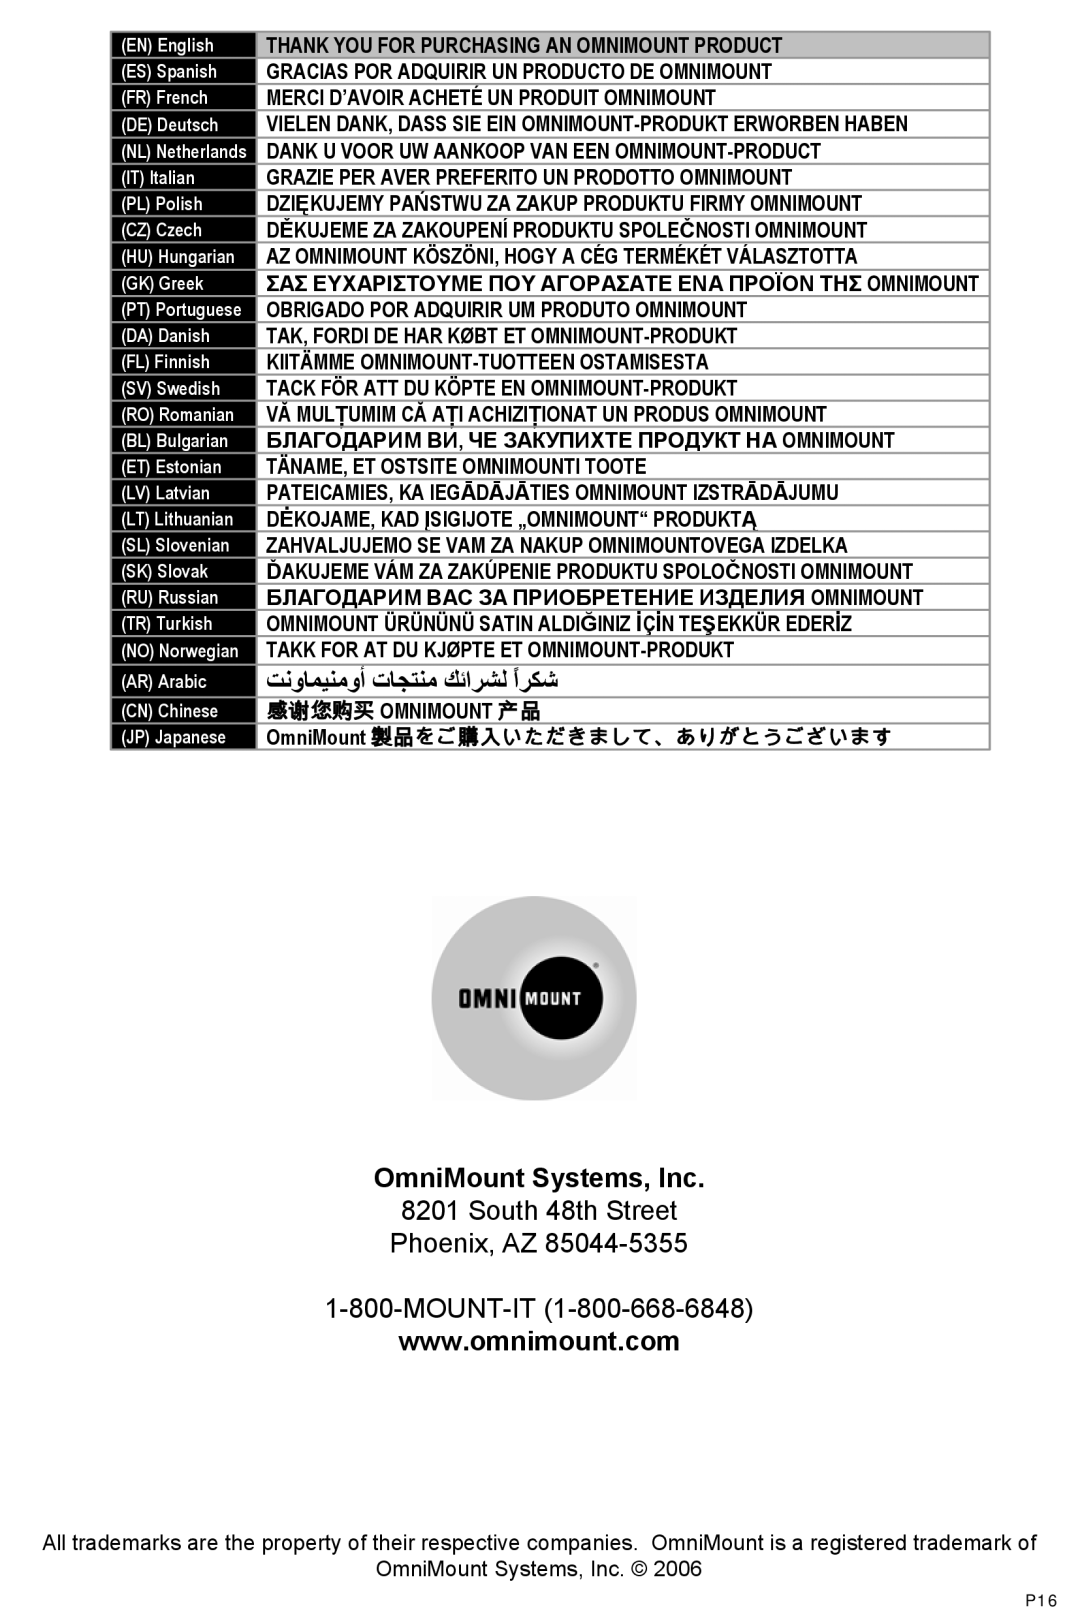 Omnimount LS31, OM1100026 instruction manual ﺖﻧوﺎﻤﻴﻨﻣوأ تﺎﺠﺘﻨﻣ ﻚﺋاﺮﺸﻟ اﺮﻜﺷً, OmniMount Systems, Inc 